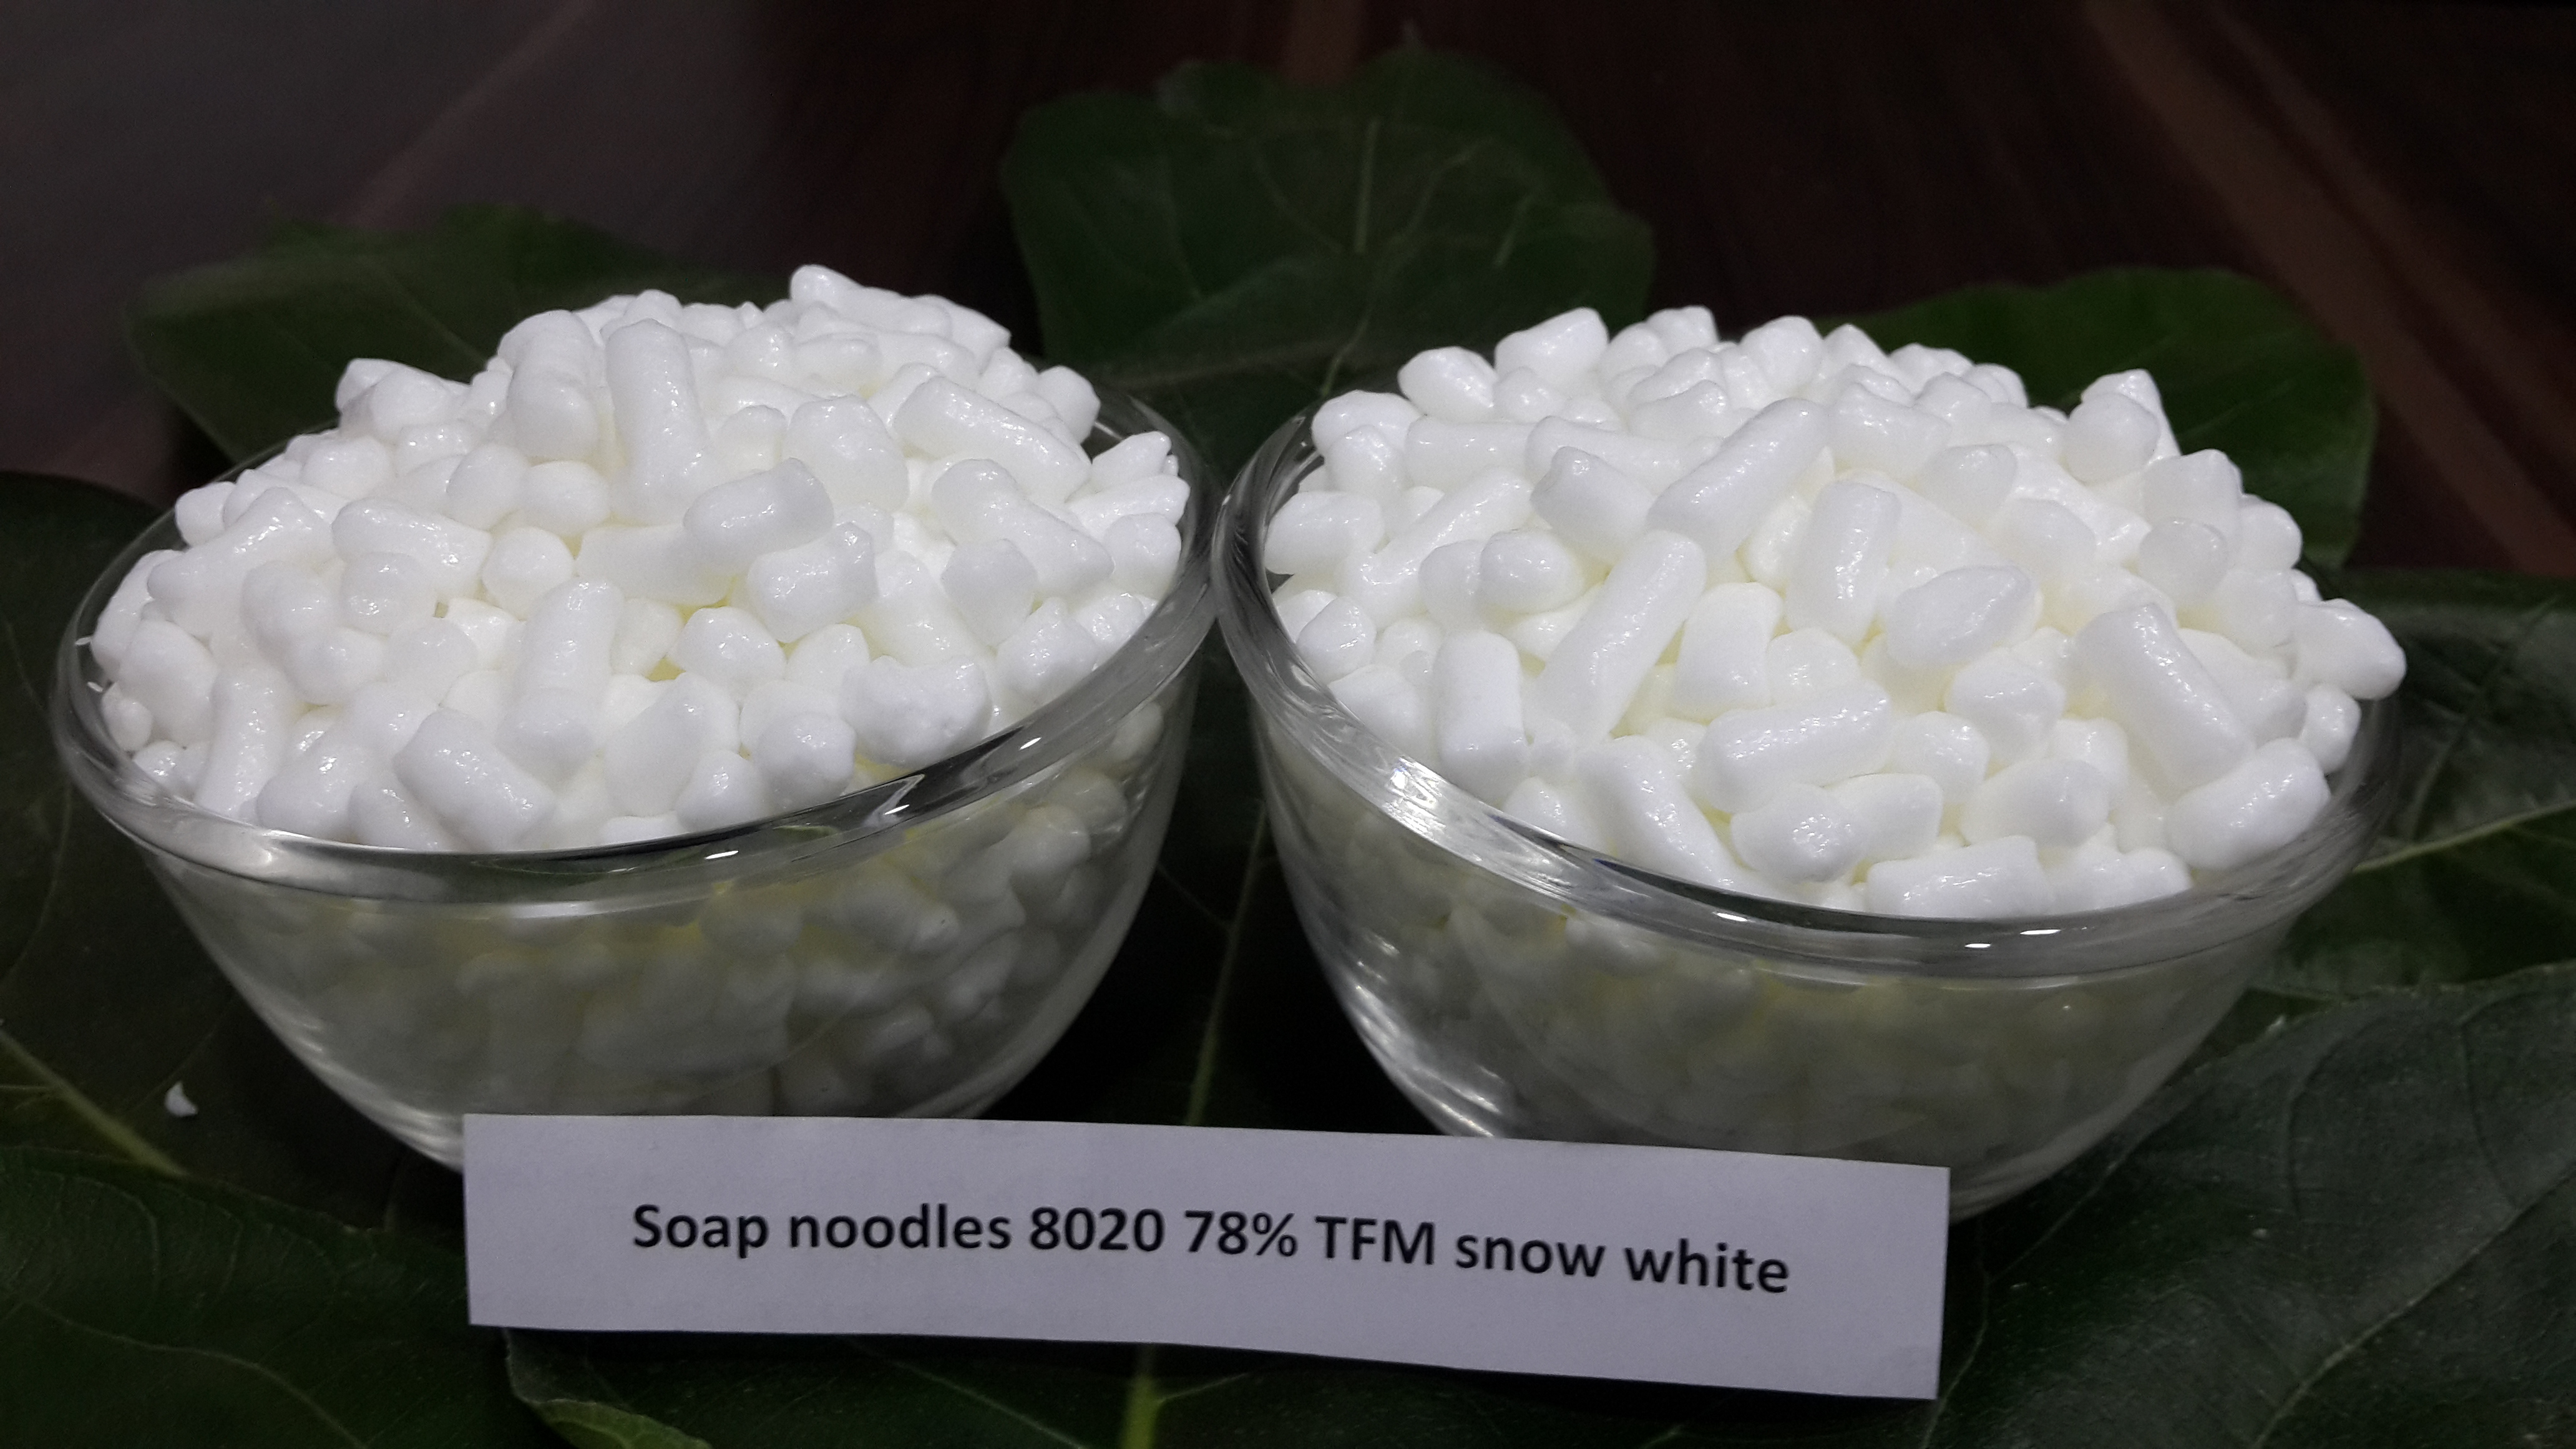 SOAP NOODLES 8020 78 TFM SNOW WHITE